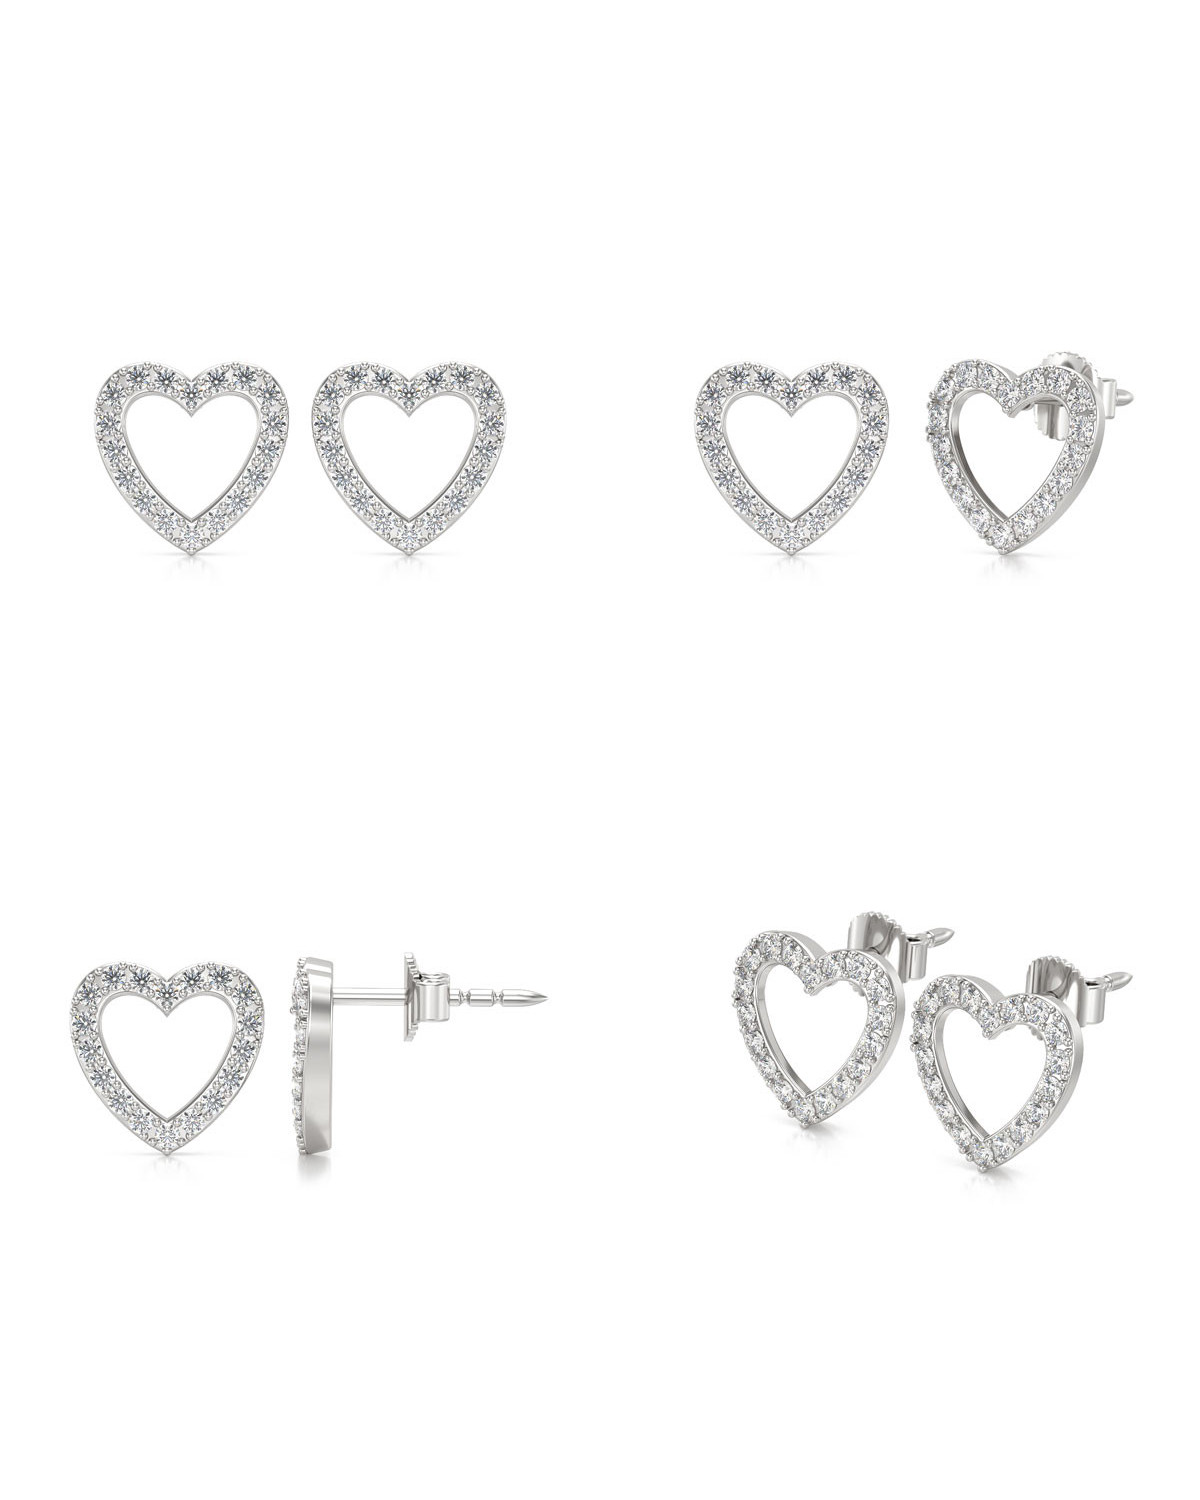 Boucles d'oreille Coeur Diamants sur Argent 925 1.284grs